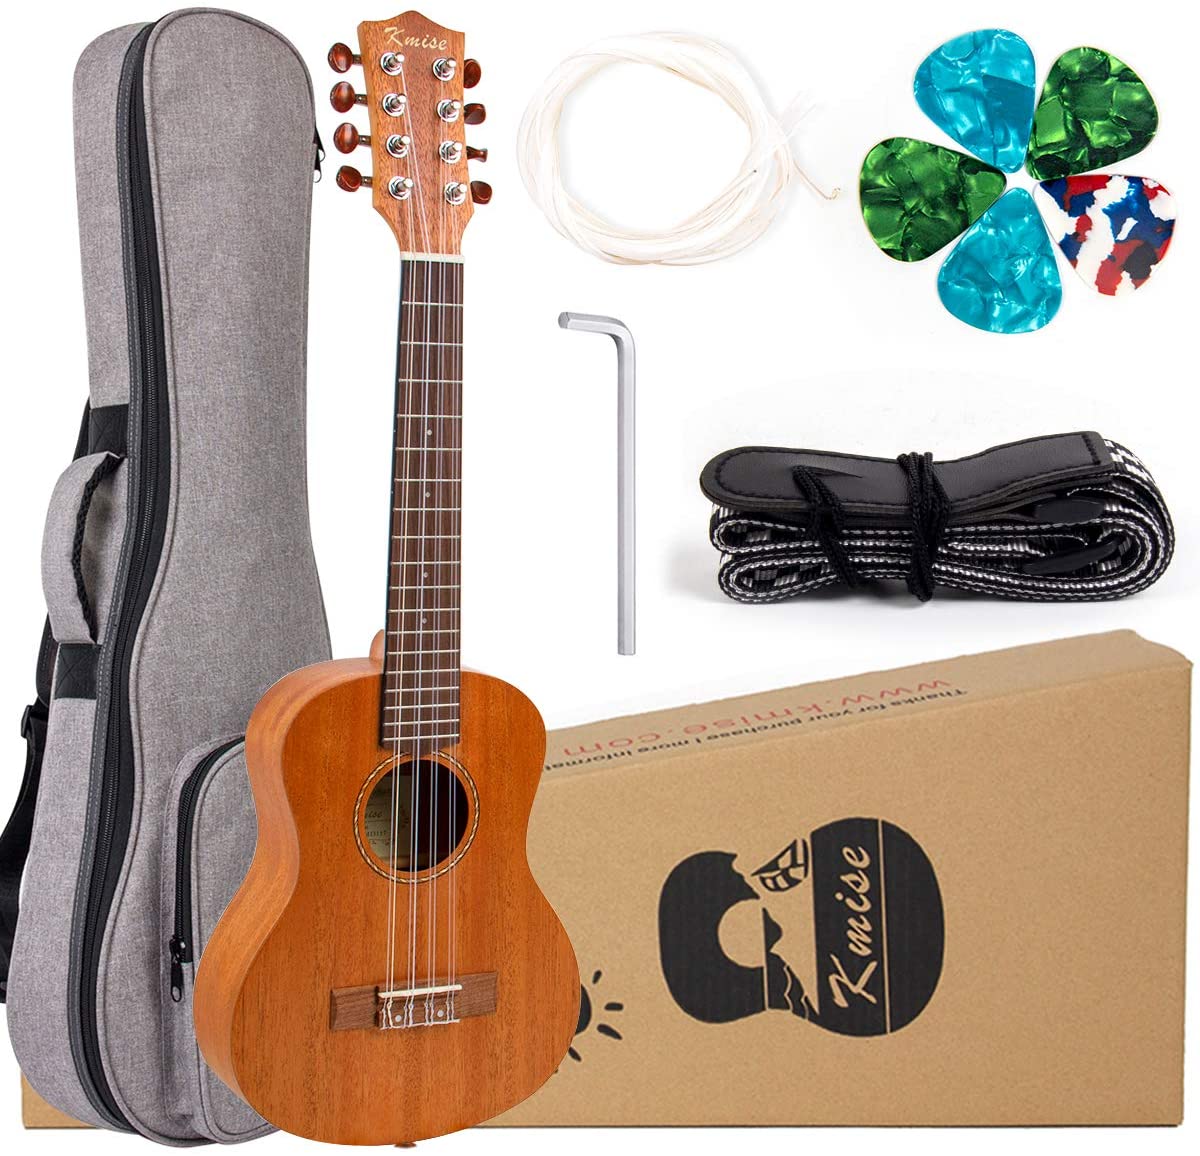 5 String Ukulele Mahogany Ukelele Tenor Uke Kit with Extra Strings Strap Gig Bag Picks